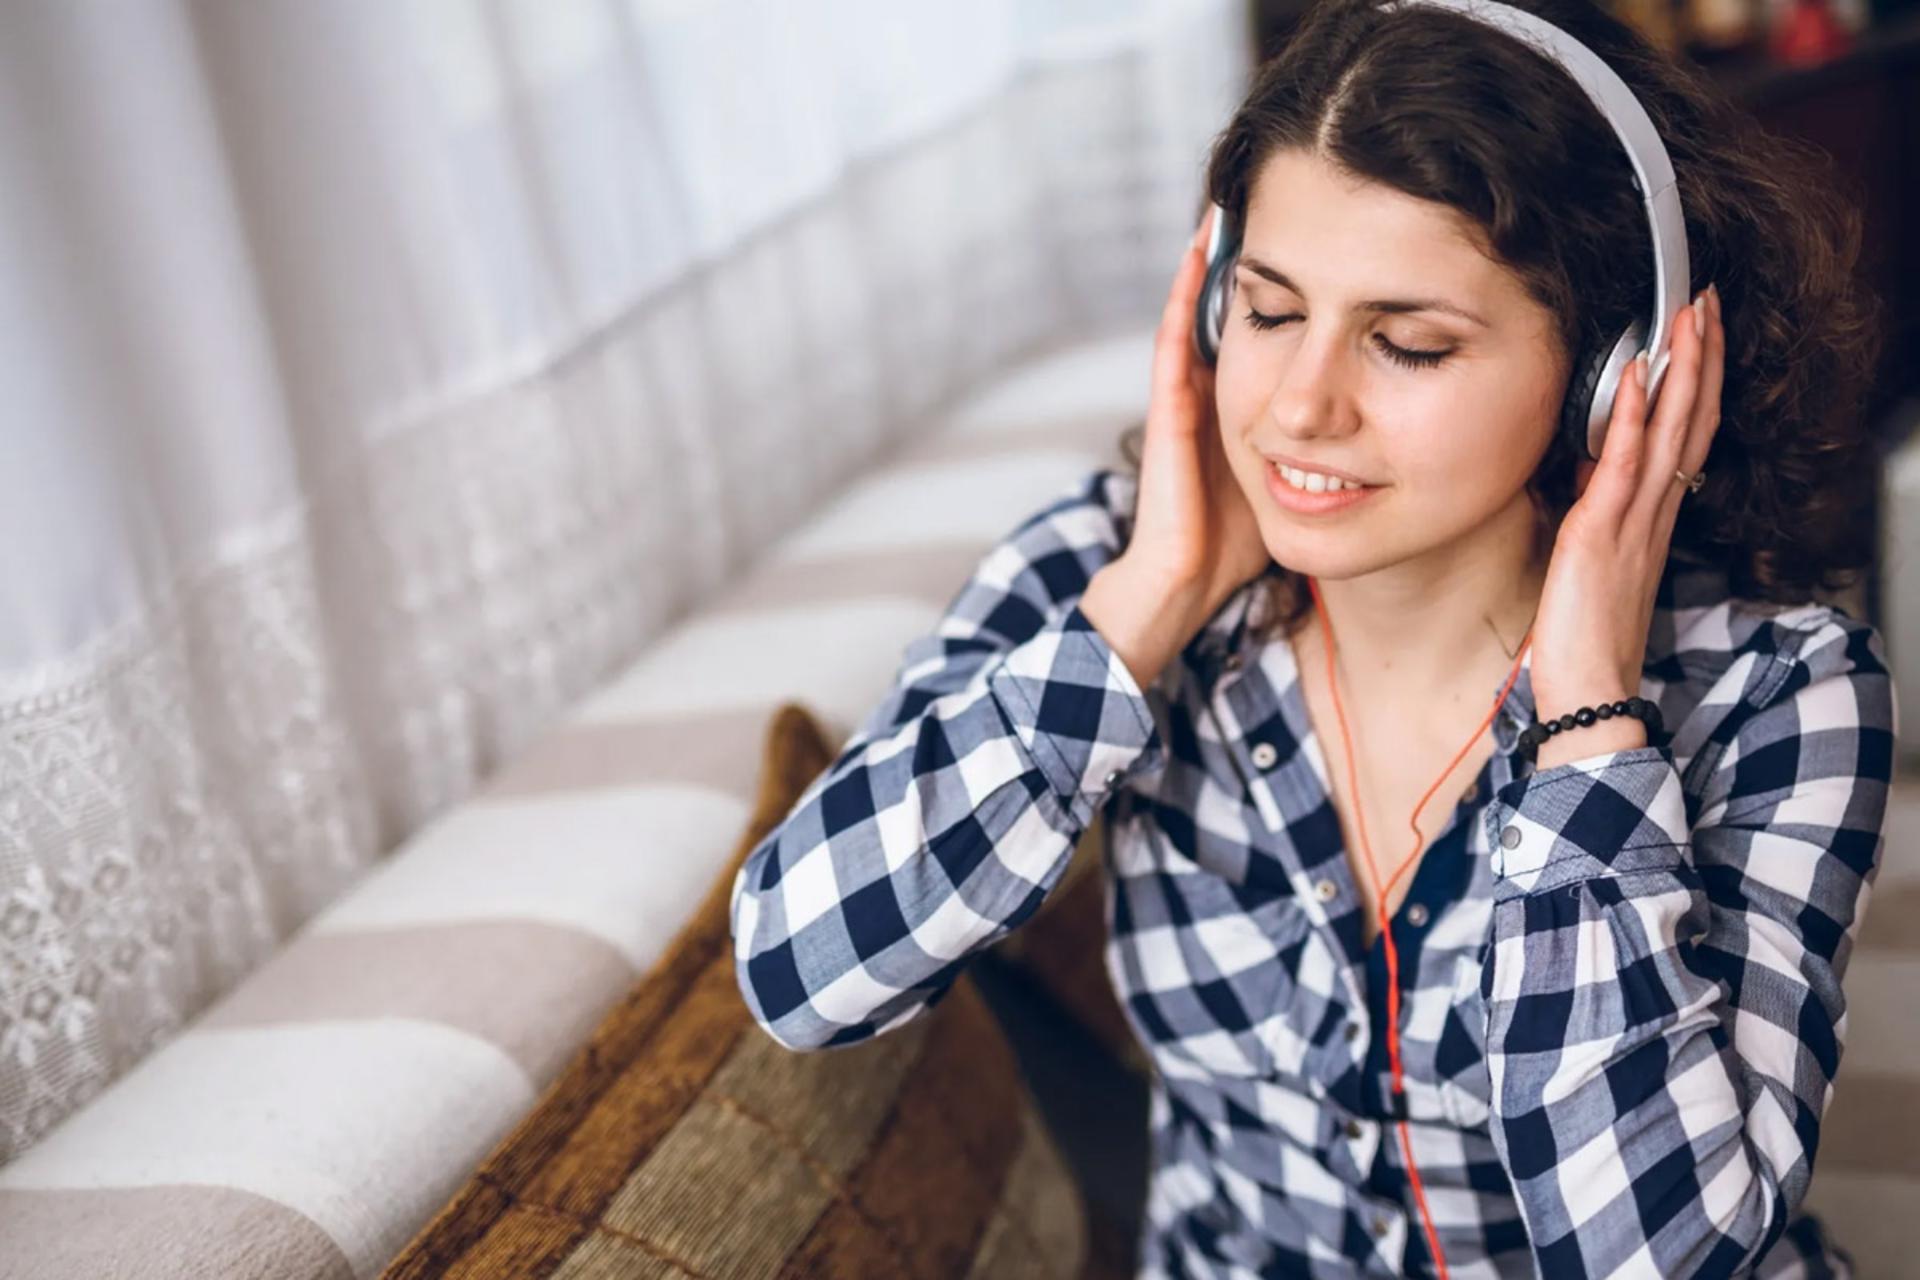 مرجع متخصصين ايران زني در حال گوش دادن به موسيقي با هدفون